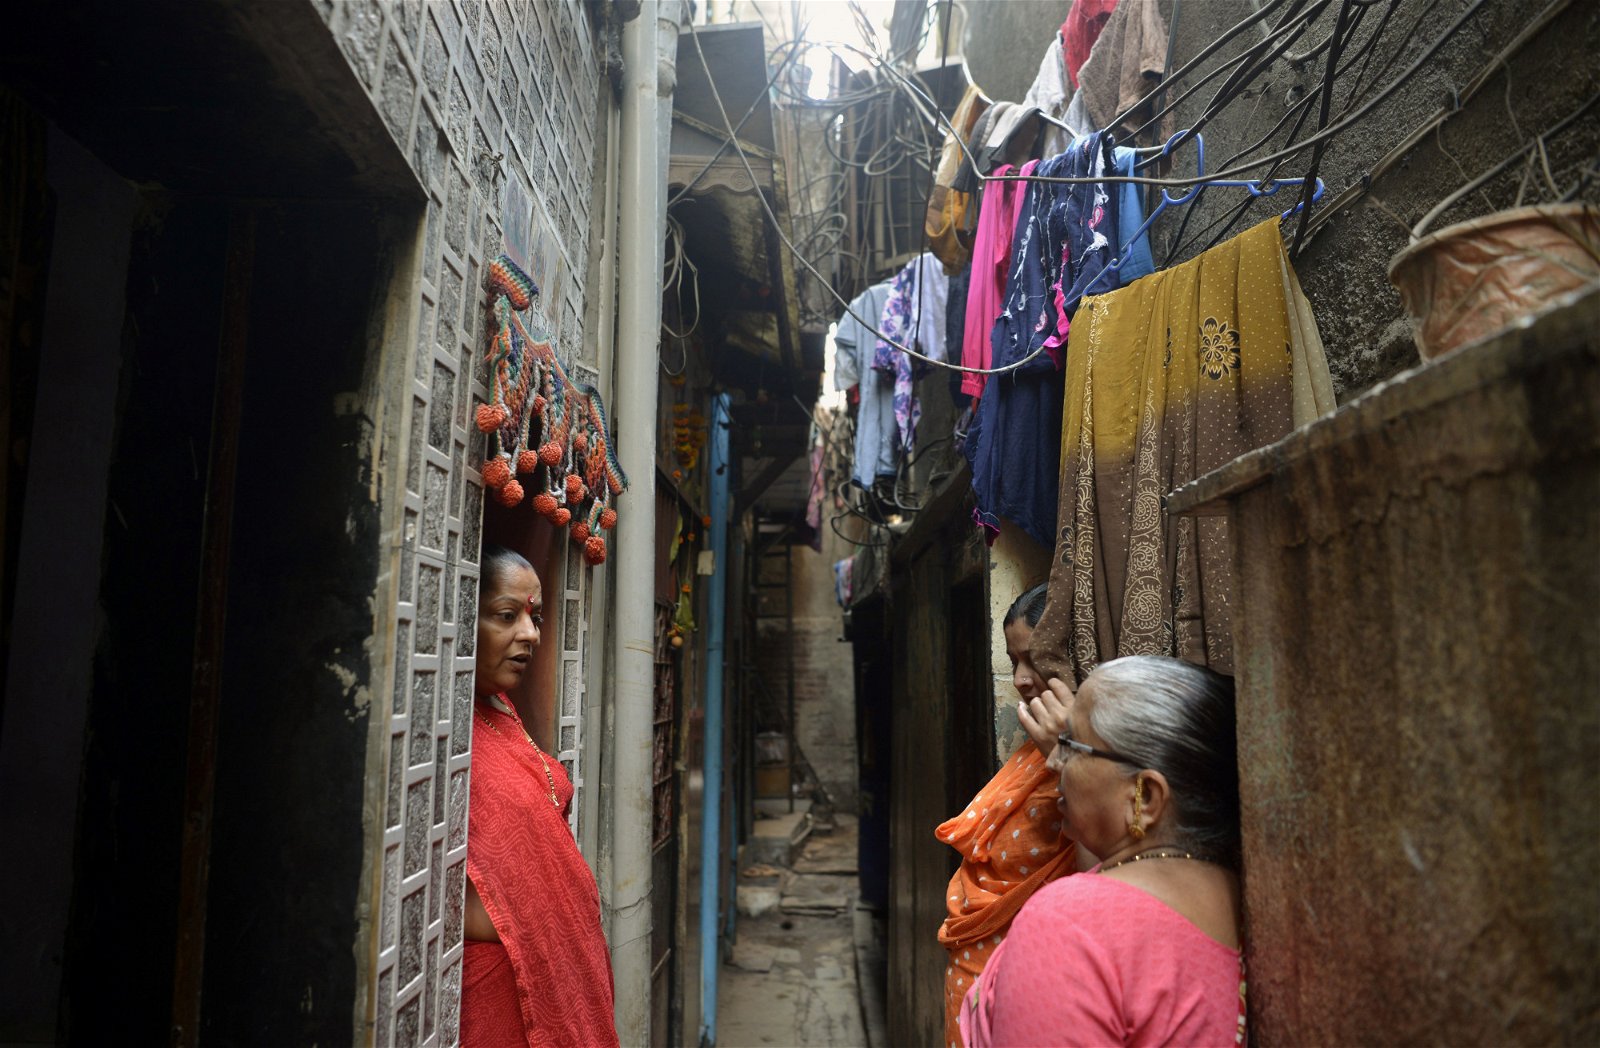 生活在达拉维平民窟的妇女，在房屋之间的狭窄小巷中闲话家常。印度政府打算将该平民窟打造成新加坡式的飞地经济。有支持者认为，该计划将有助提升人民生活水平。